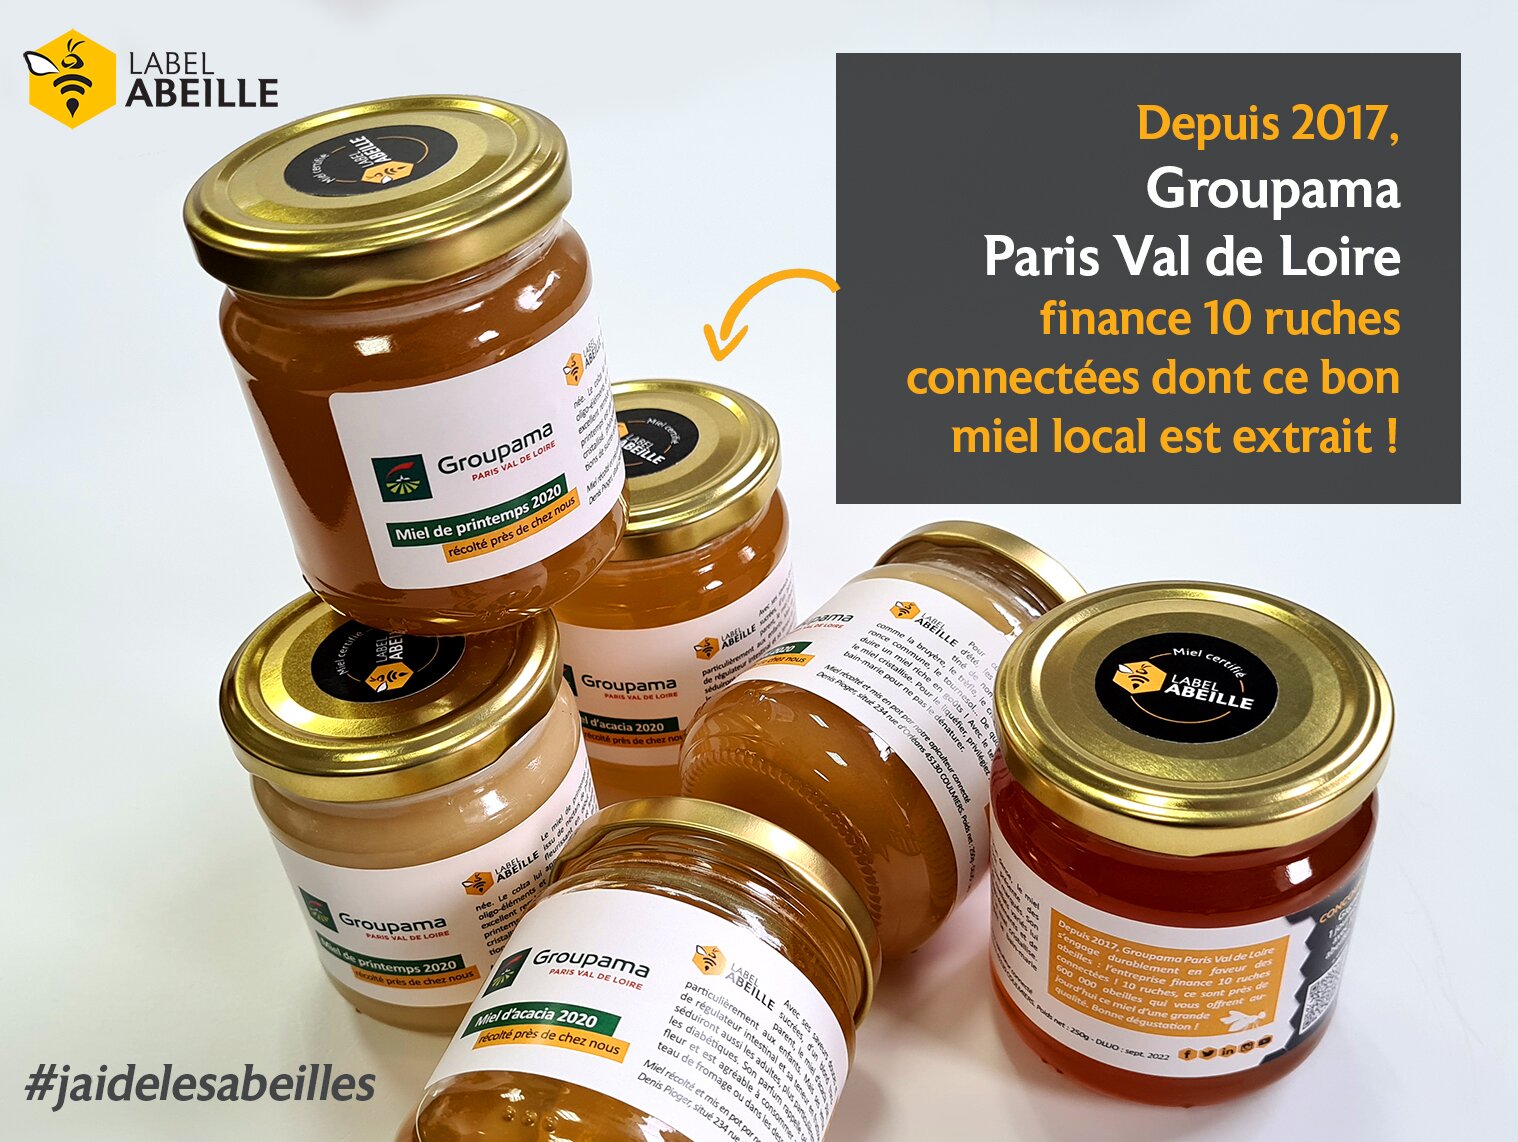 LABEL ABEILLE - Groupama Paris Val de Loire s'engage pour les abeilles